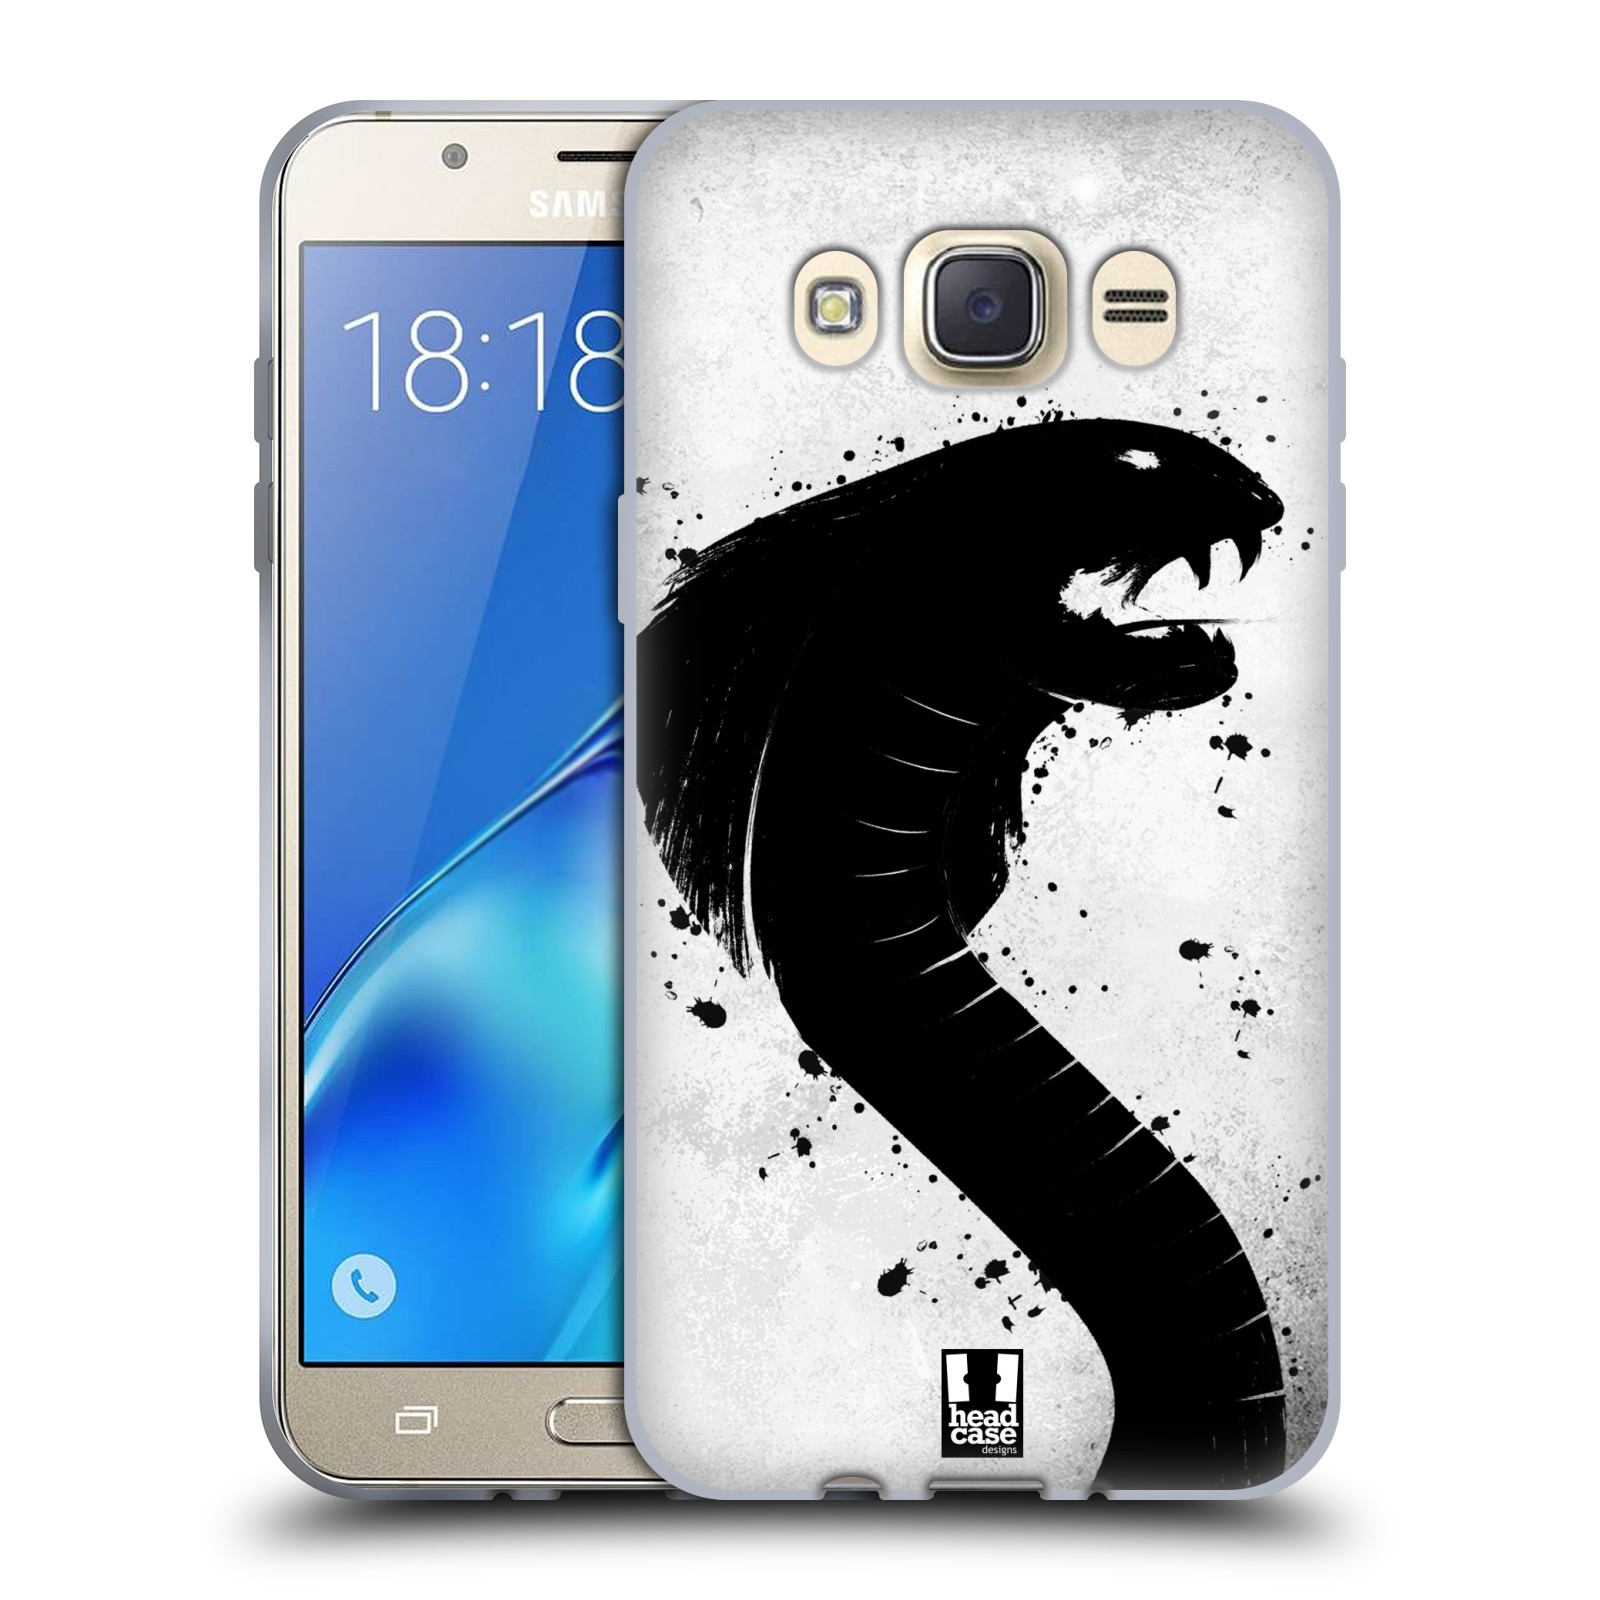 HEAD CASE silikonový obal, kryt na mobil Samsung Galaxy J7 2016 (J710, J710F) vzor Kresba tuš zvíře had kobra